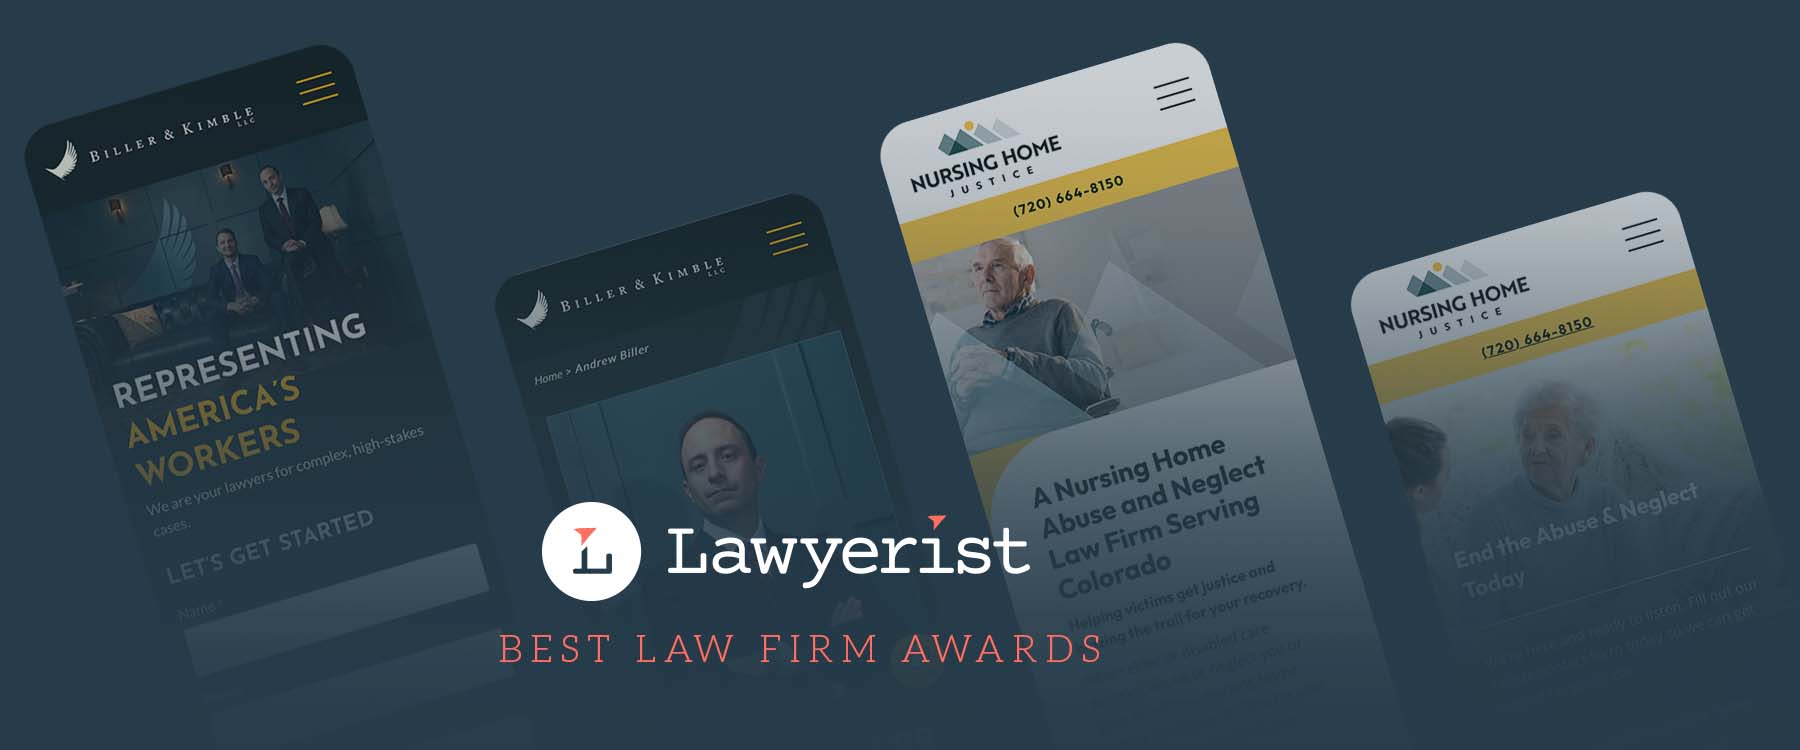 Lawyerist Best law firm awards